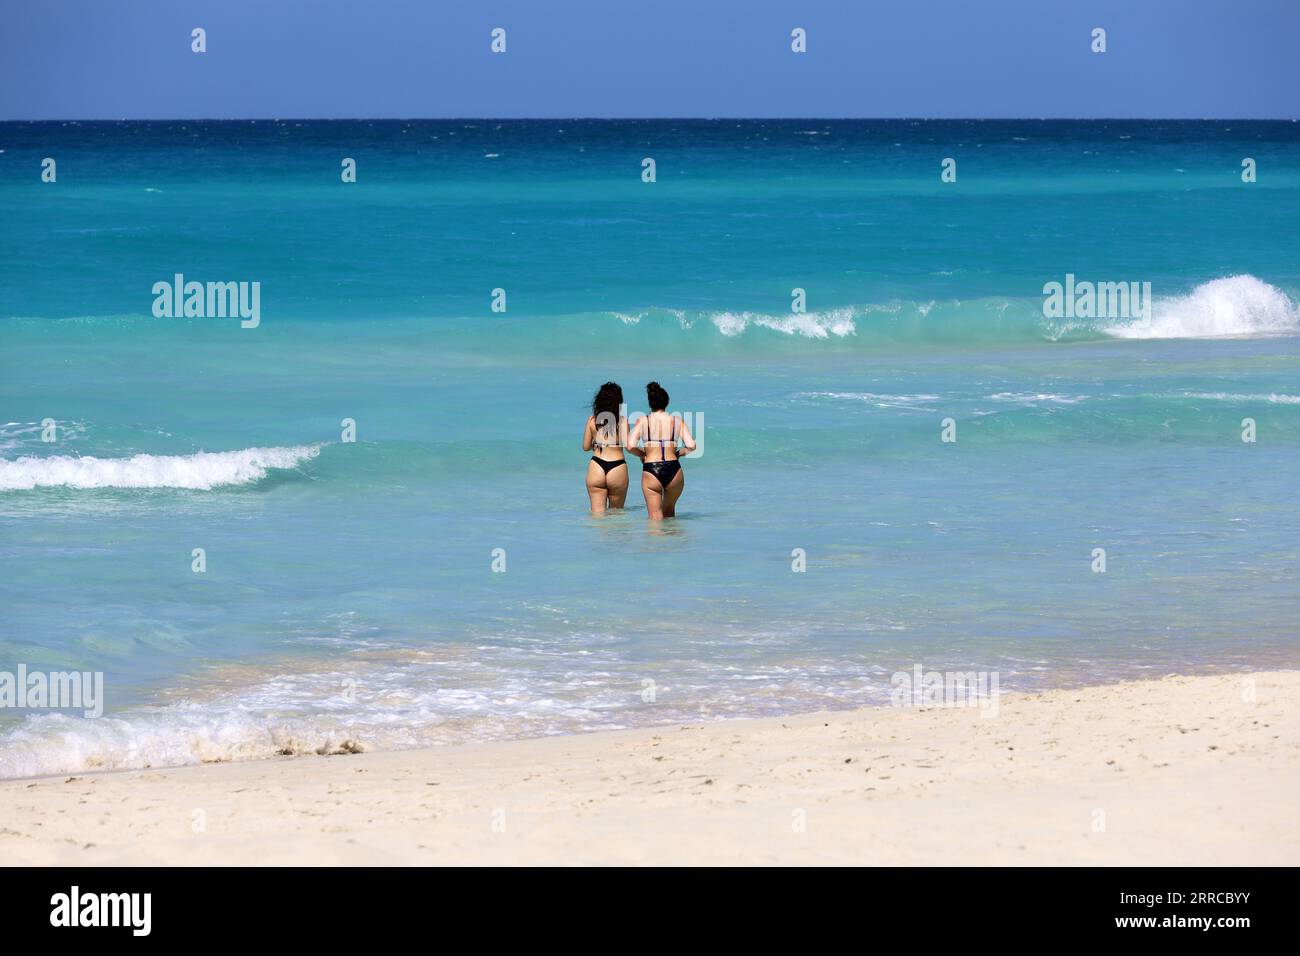 Zwei Frauen in Bademode, die im Meerwasser schwimmen, Rückansicht. Zwei Freundinnen am Strand Stockfoto